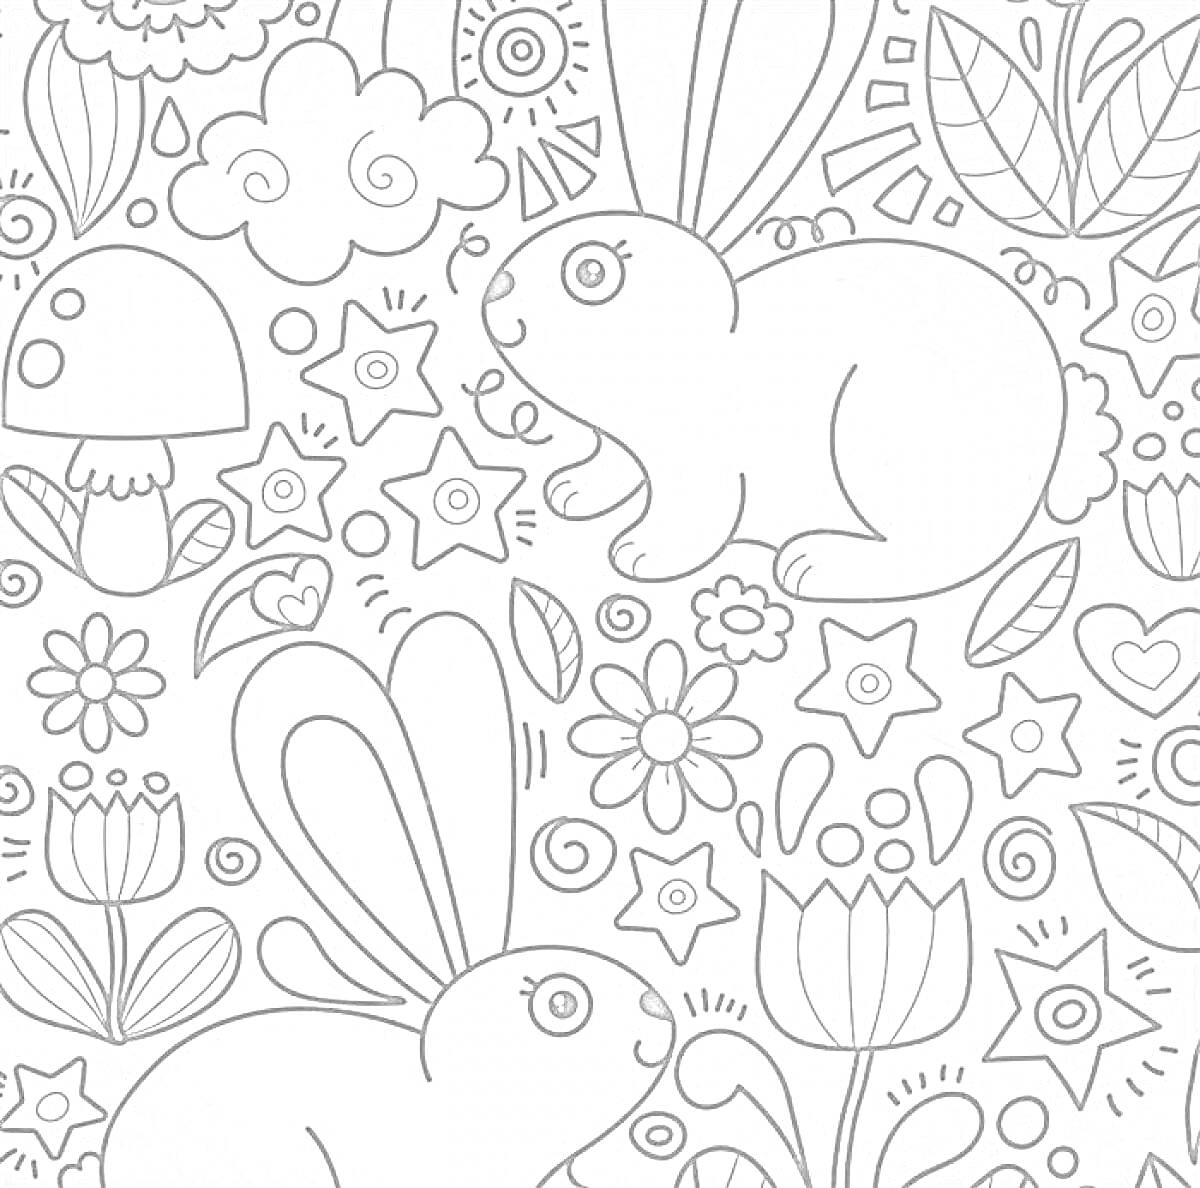 Раскраска Кролики, грибы, цветы и звезды